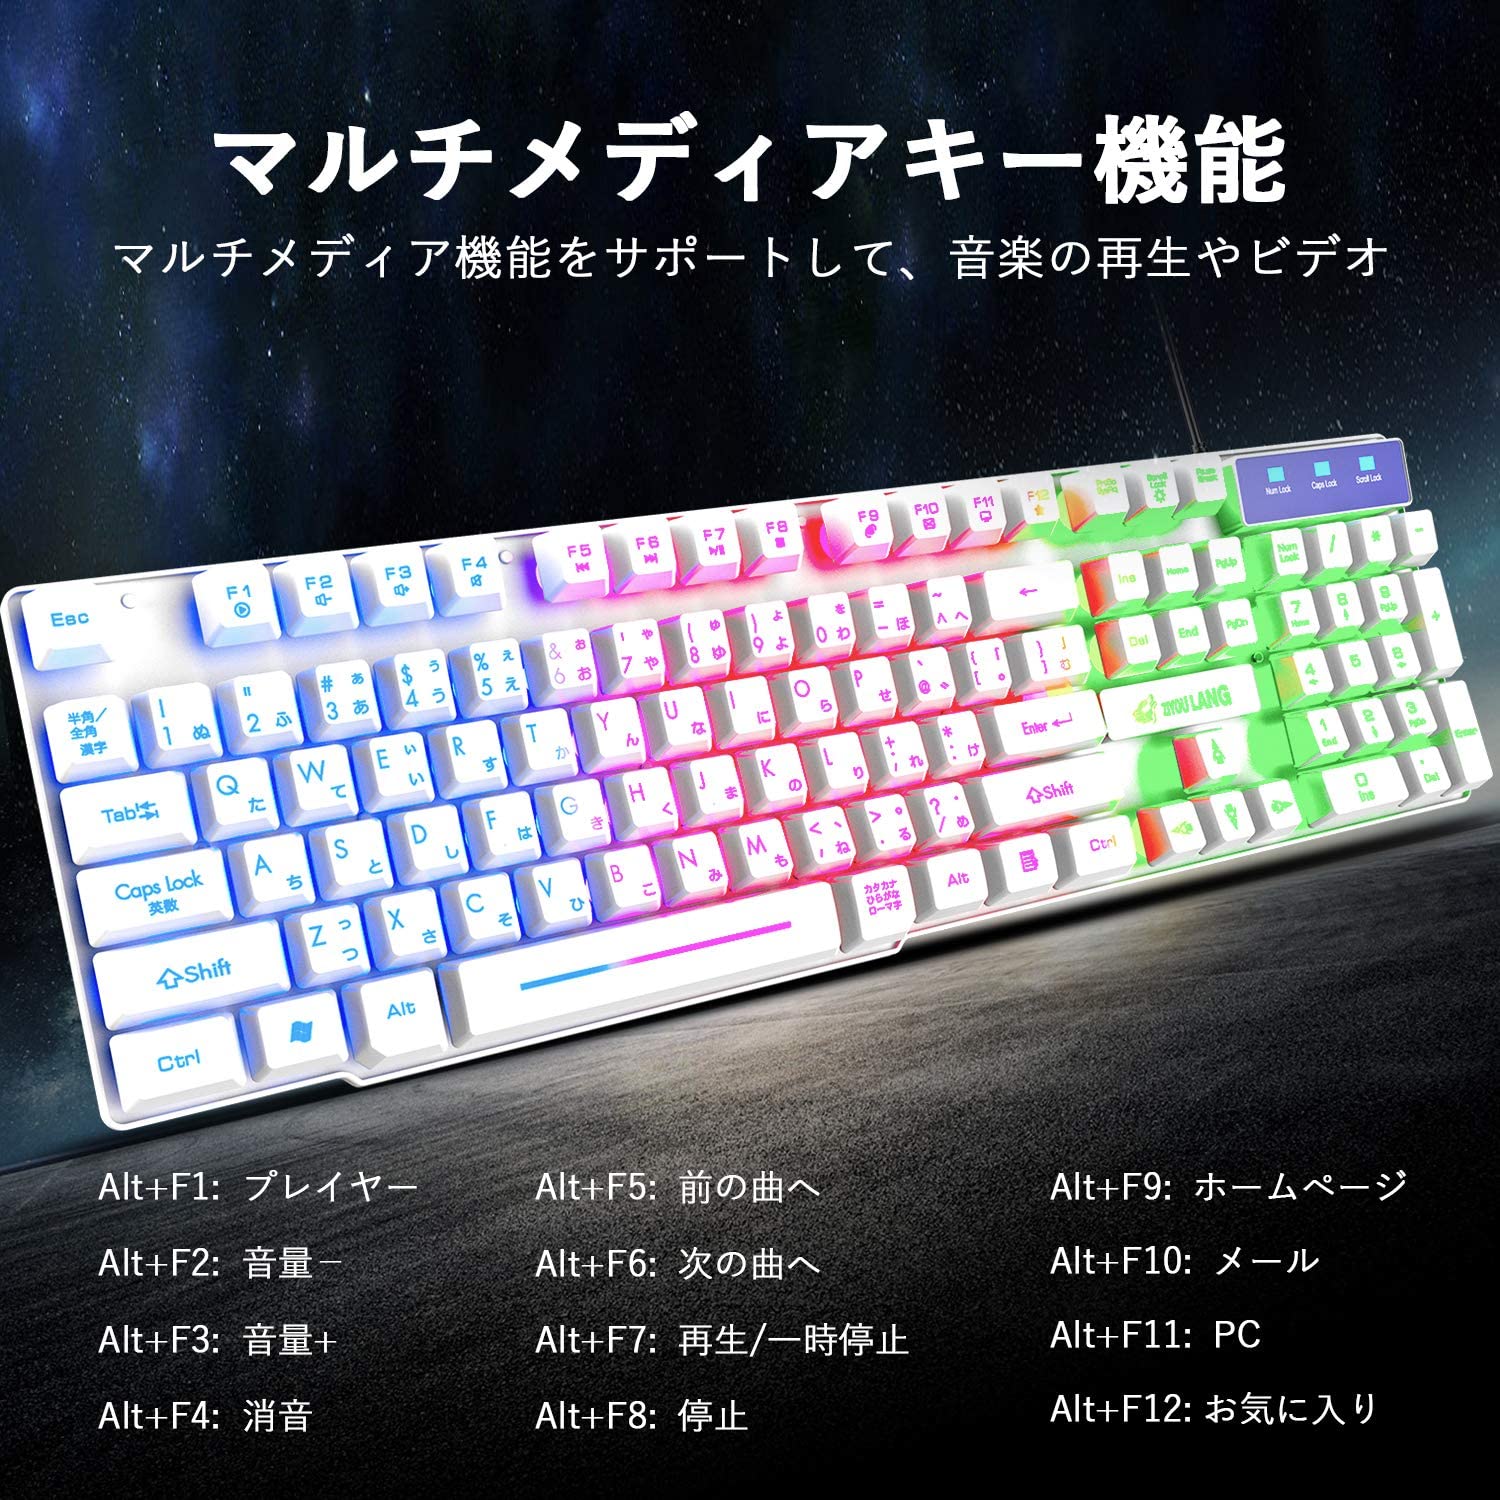 大阪売れ済  6点セット マウスパッド マウス ゲーミングキーボード PC周辺機器